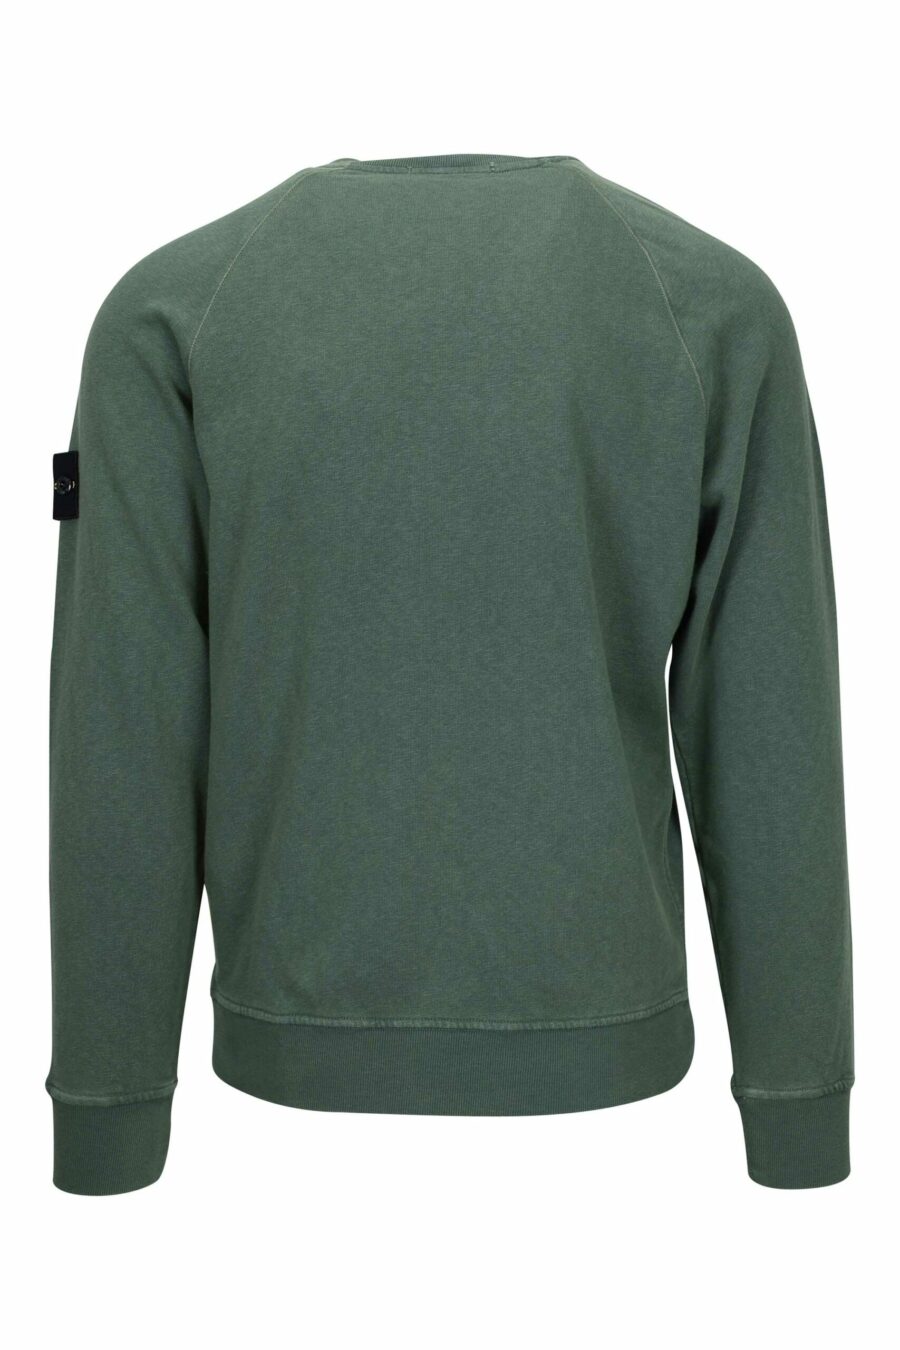 Grünes Sweatshirt mit Logo-Kompass-Aufnäher - 8052572906923 1 skaliert